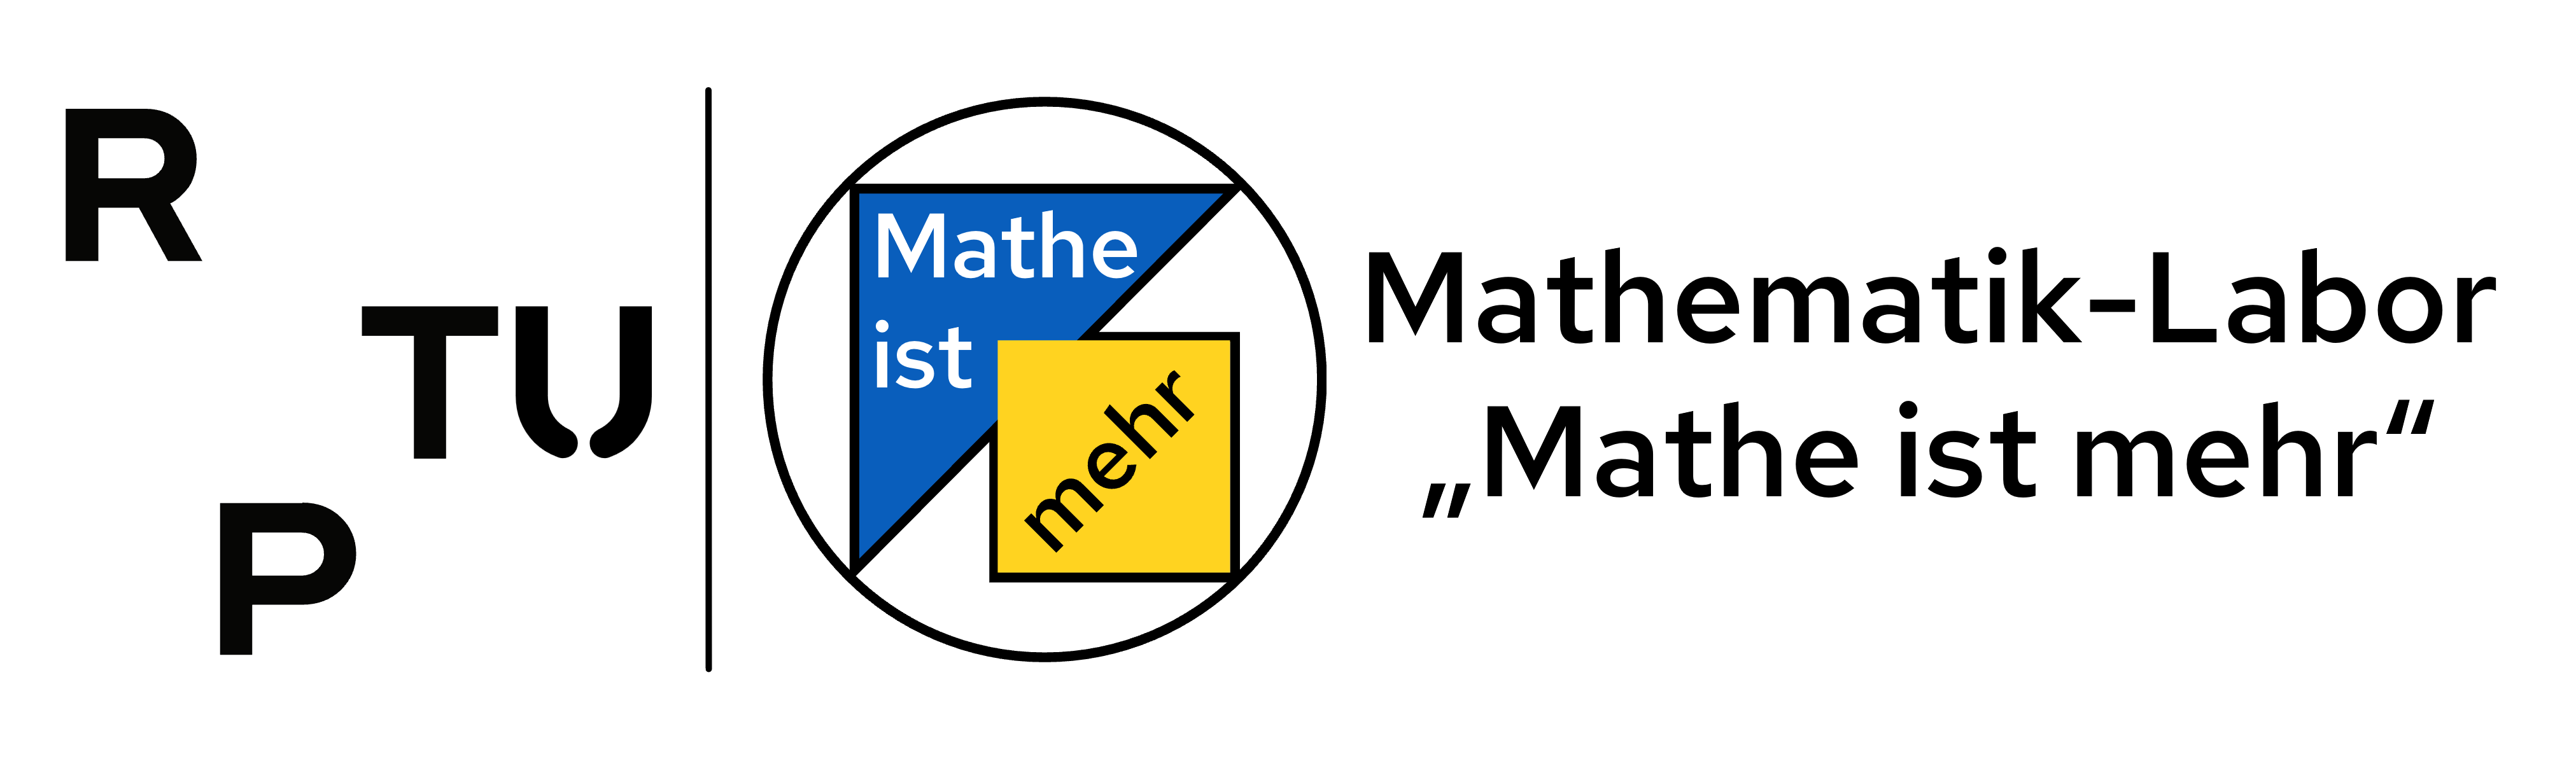 Mathematik-Labor "Mathe ist mehr"